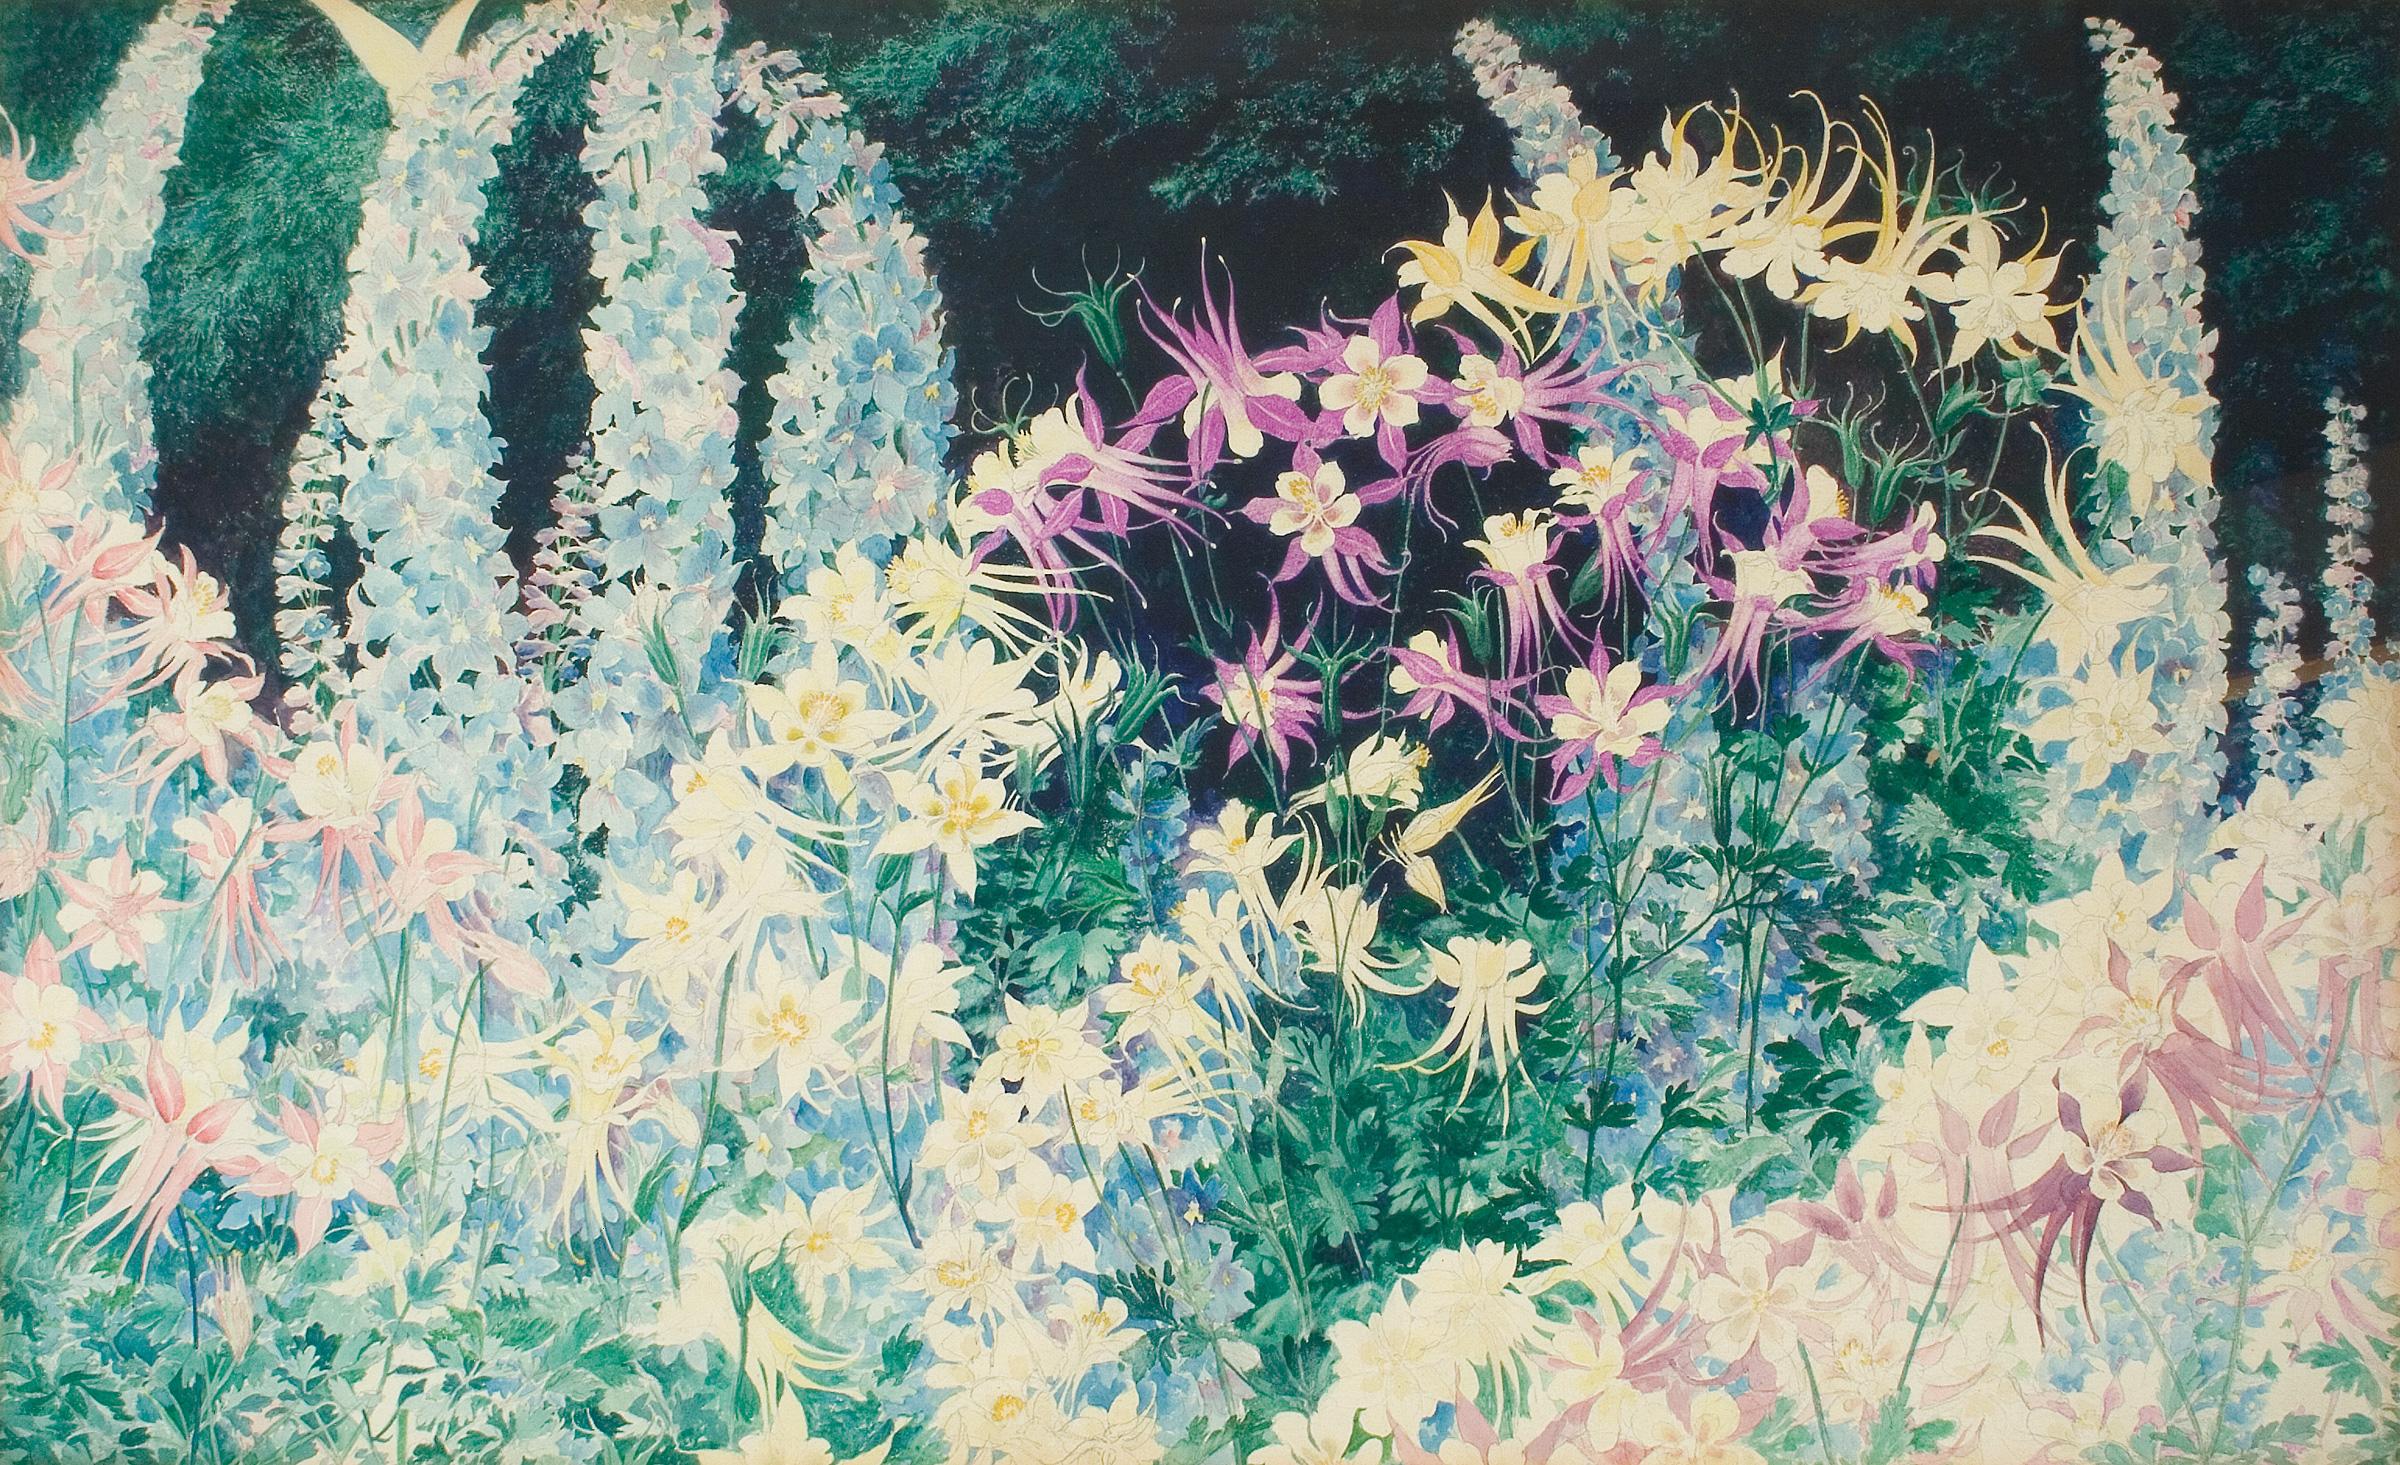 Blumen: Aquilegia und Delphinium – amerikanisches impressionistisches Aquarell auf Papier – Art von John Rutherford Boyd